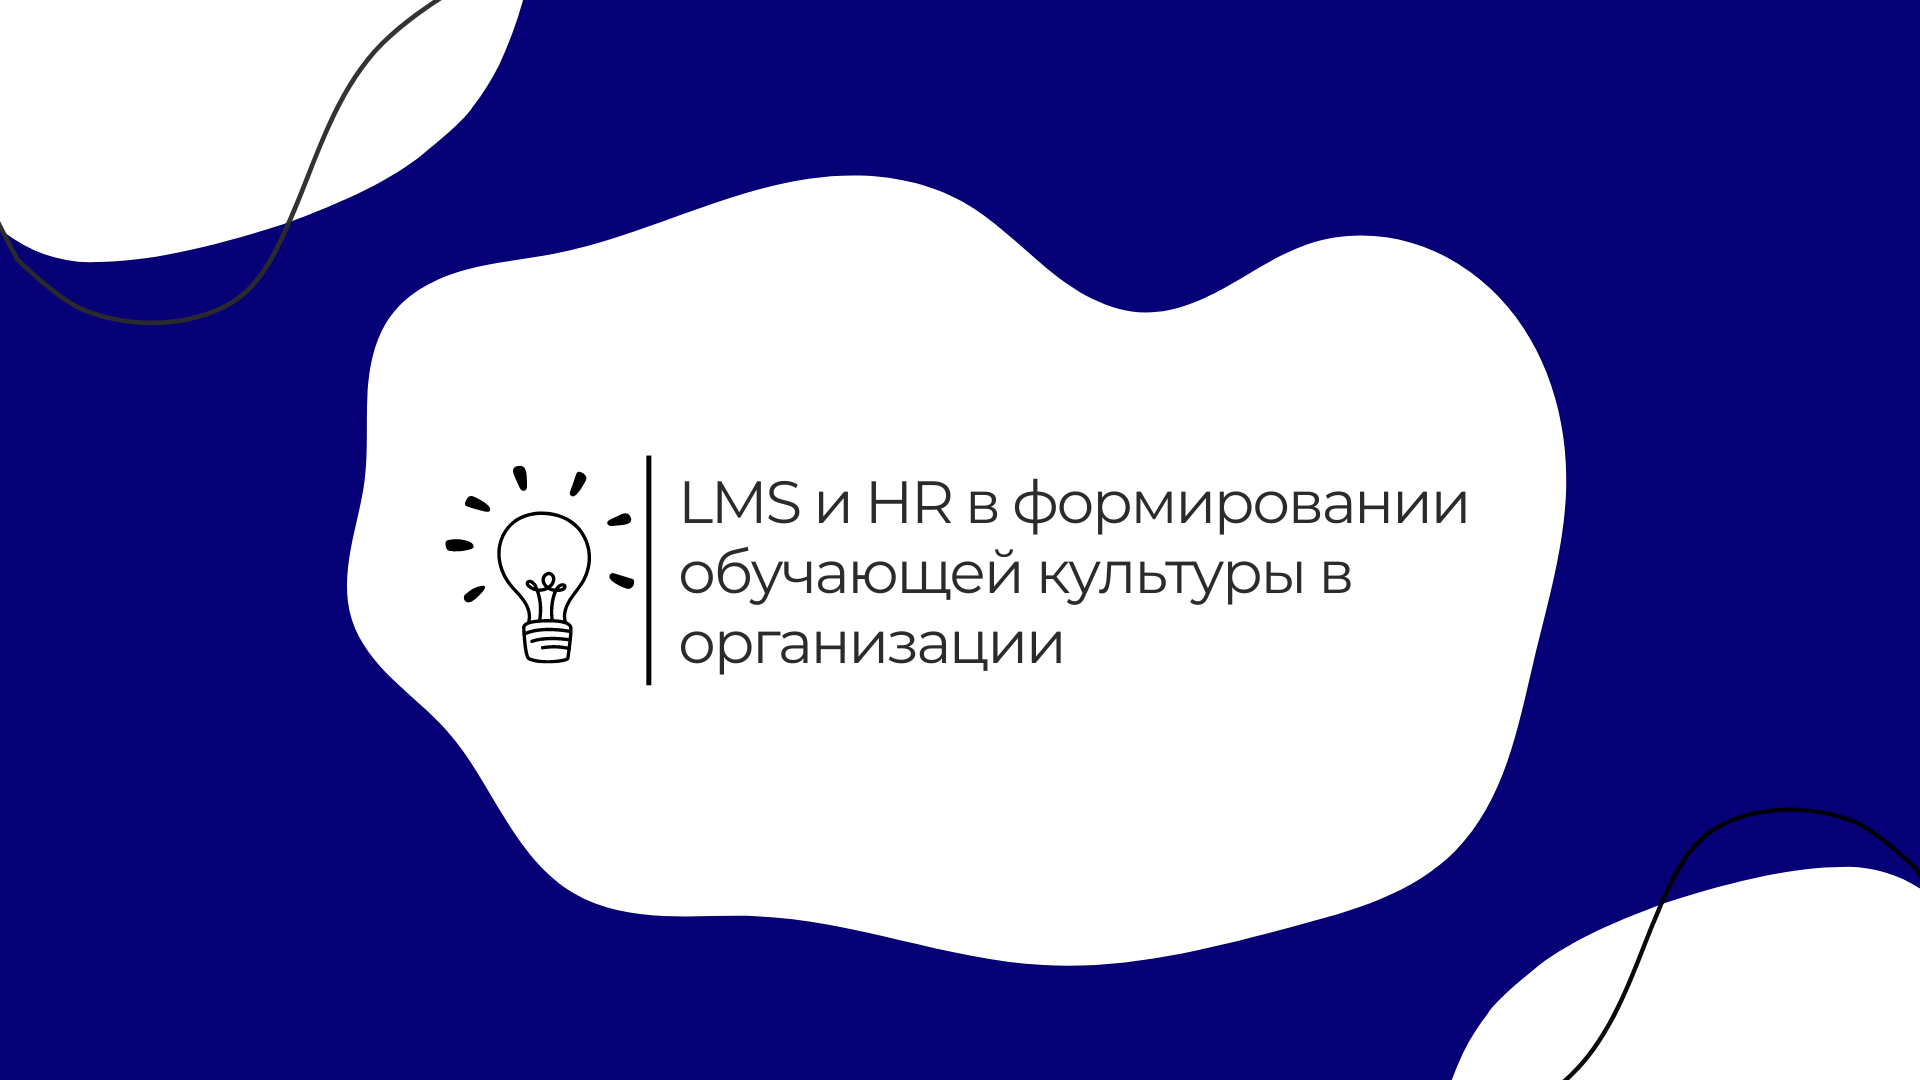 Роль LMS и HR в формировании обучающей культуры в организации